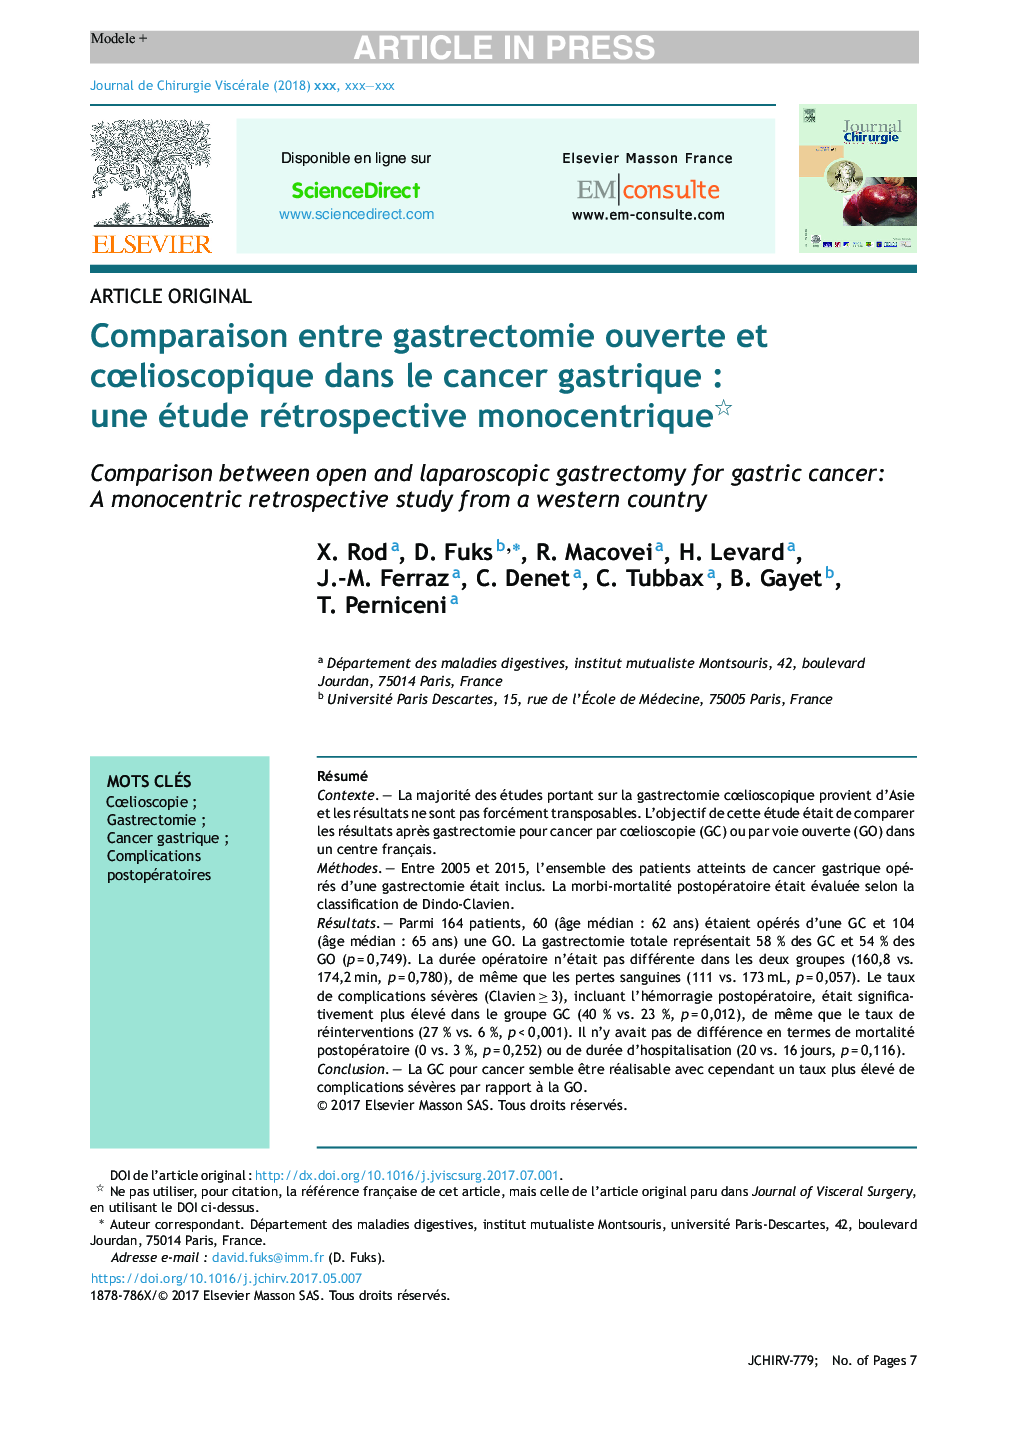 Comparaison entre gastrectomie ouverte et cÅlioscopique dans le cancer gastriqueÂ : une étude rétrospective monocentrique